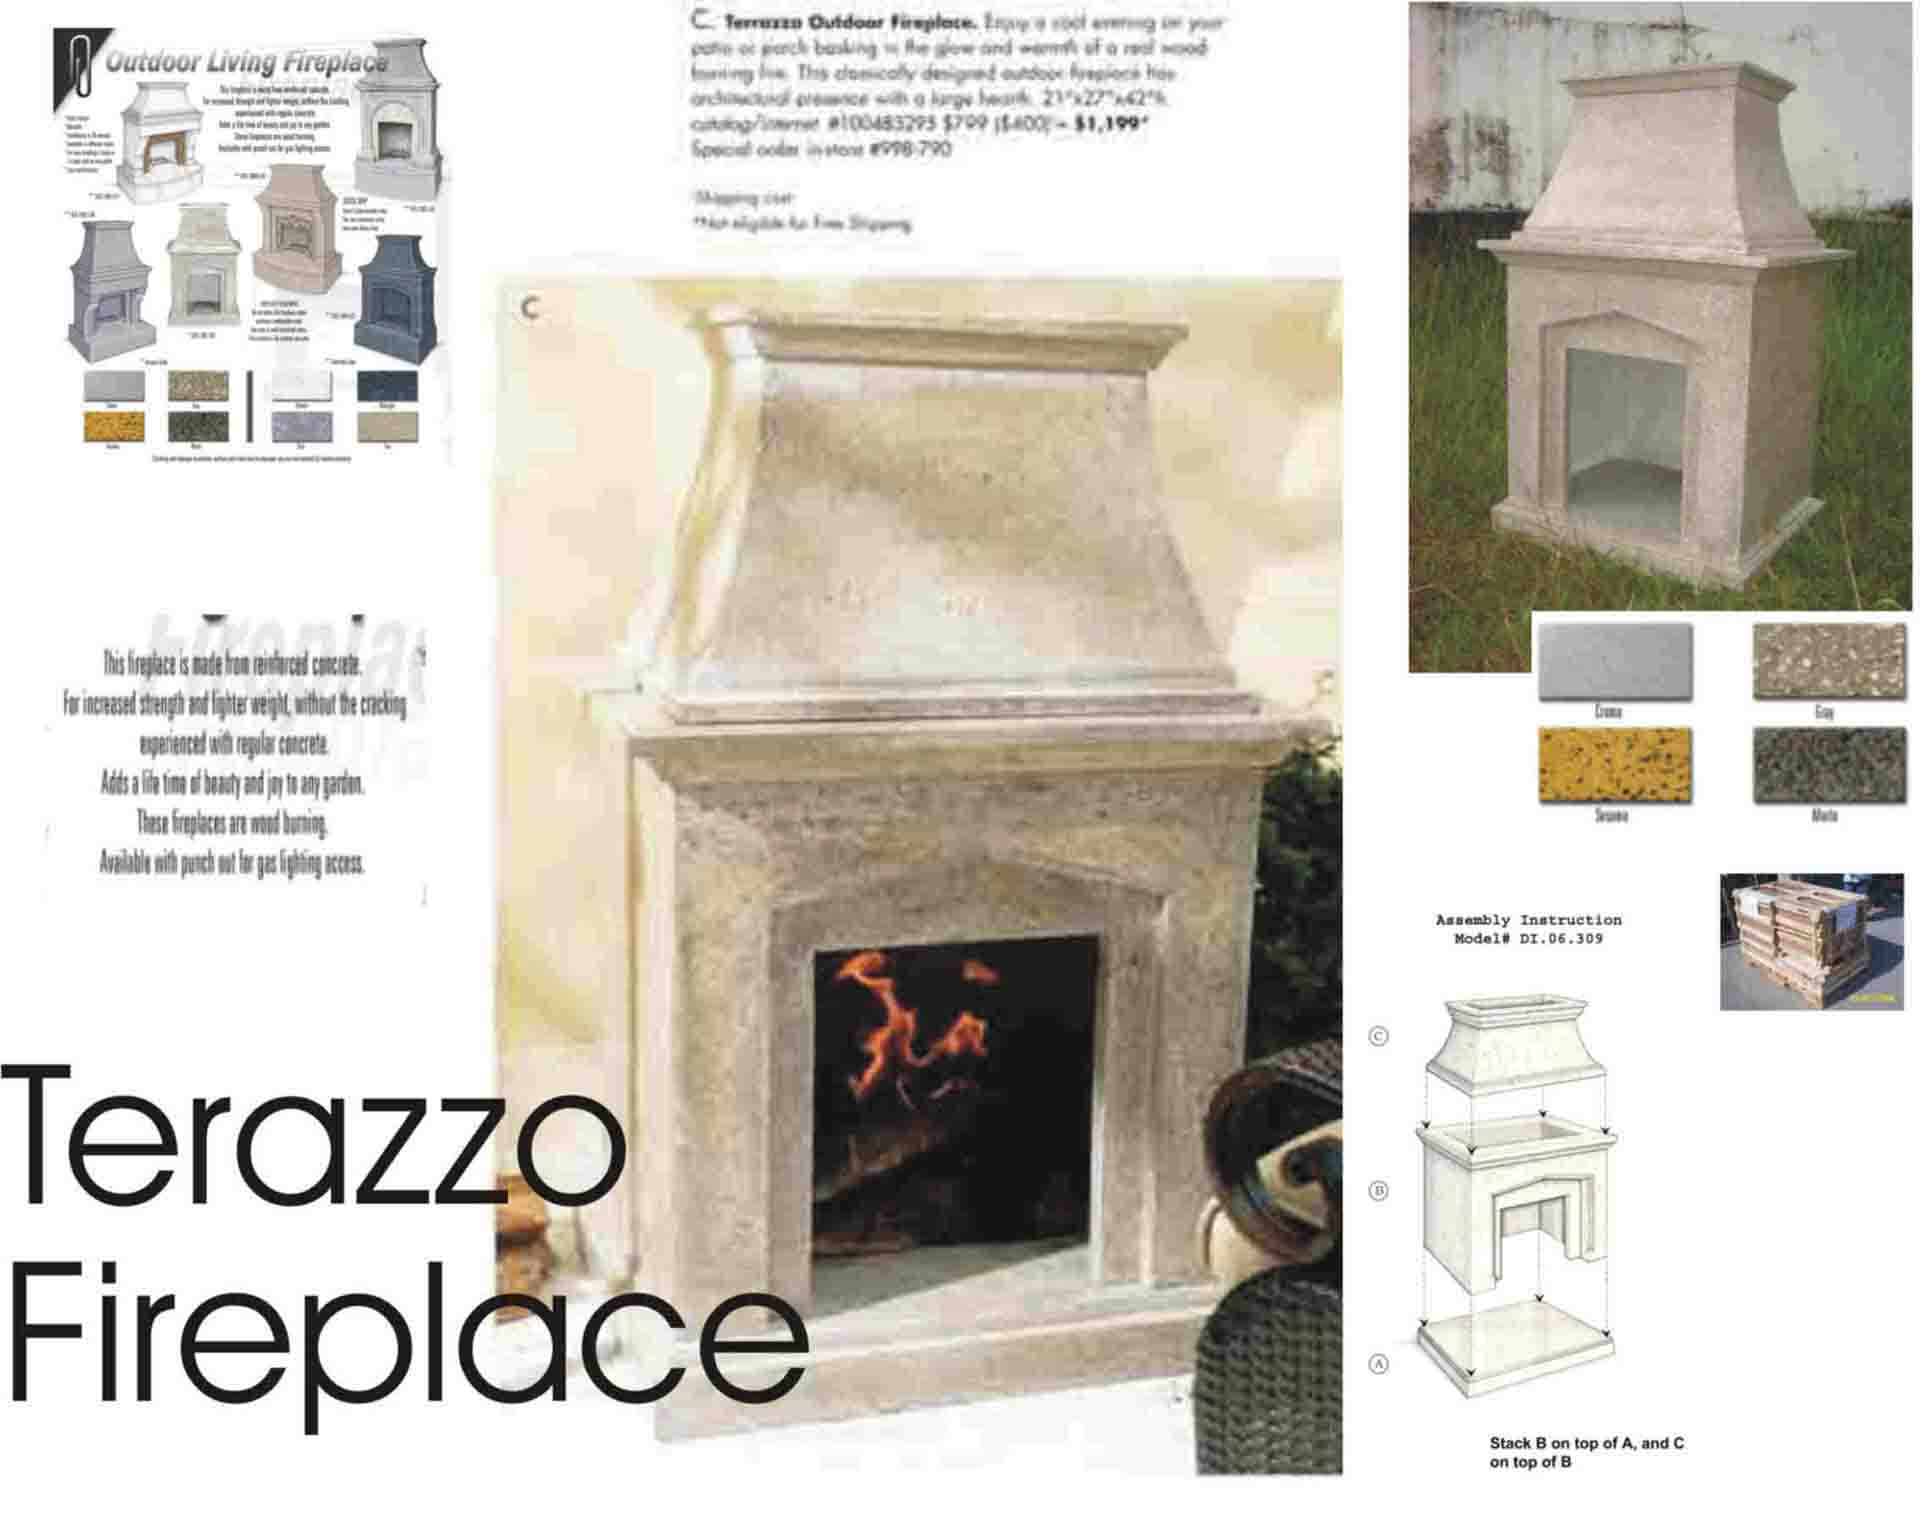  Terazzo Fireplace